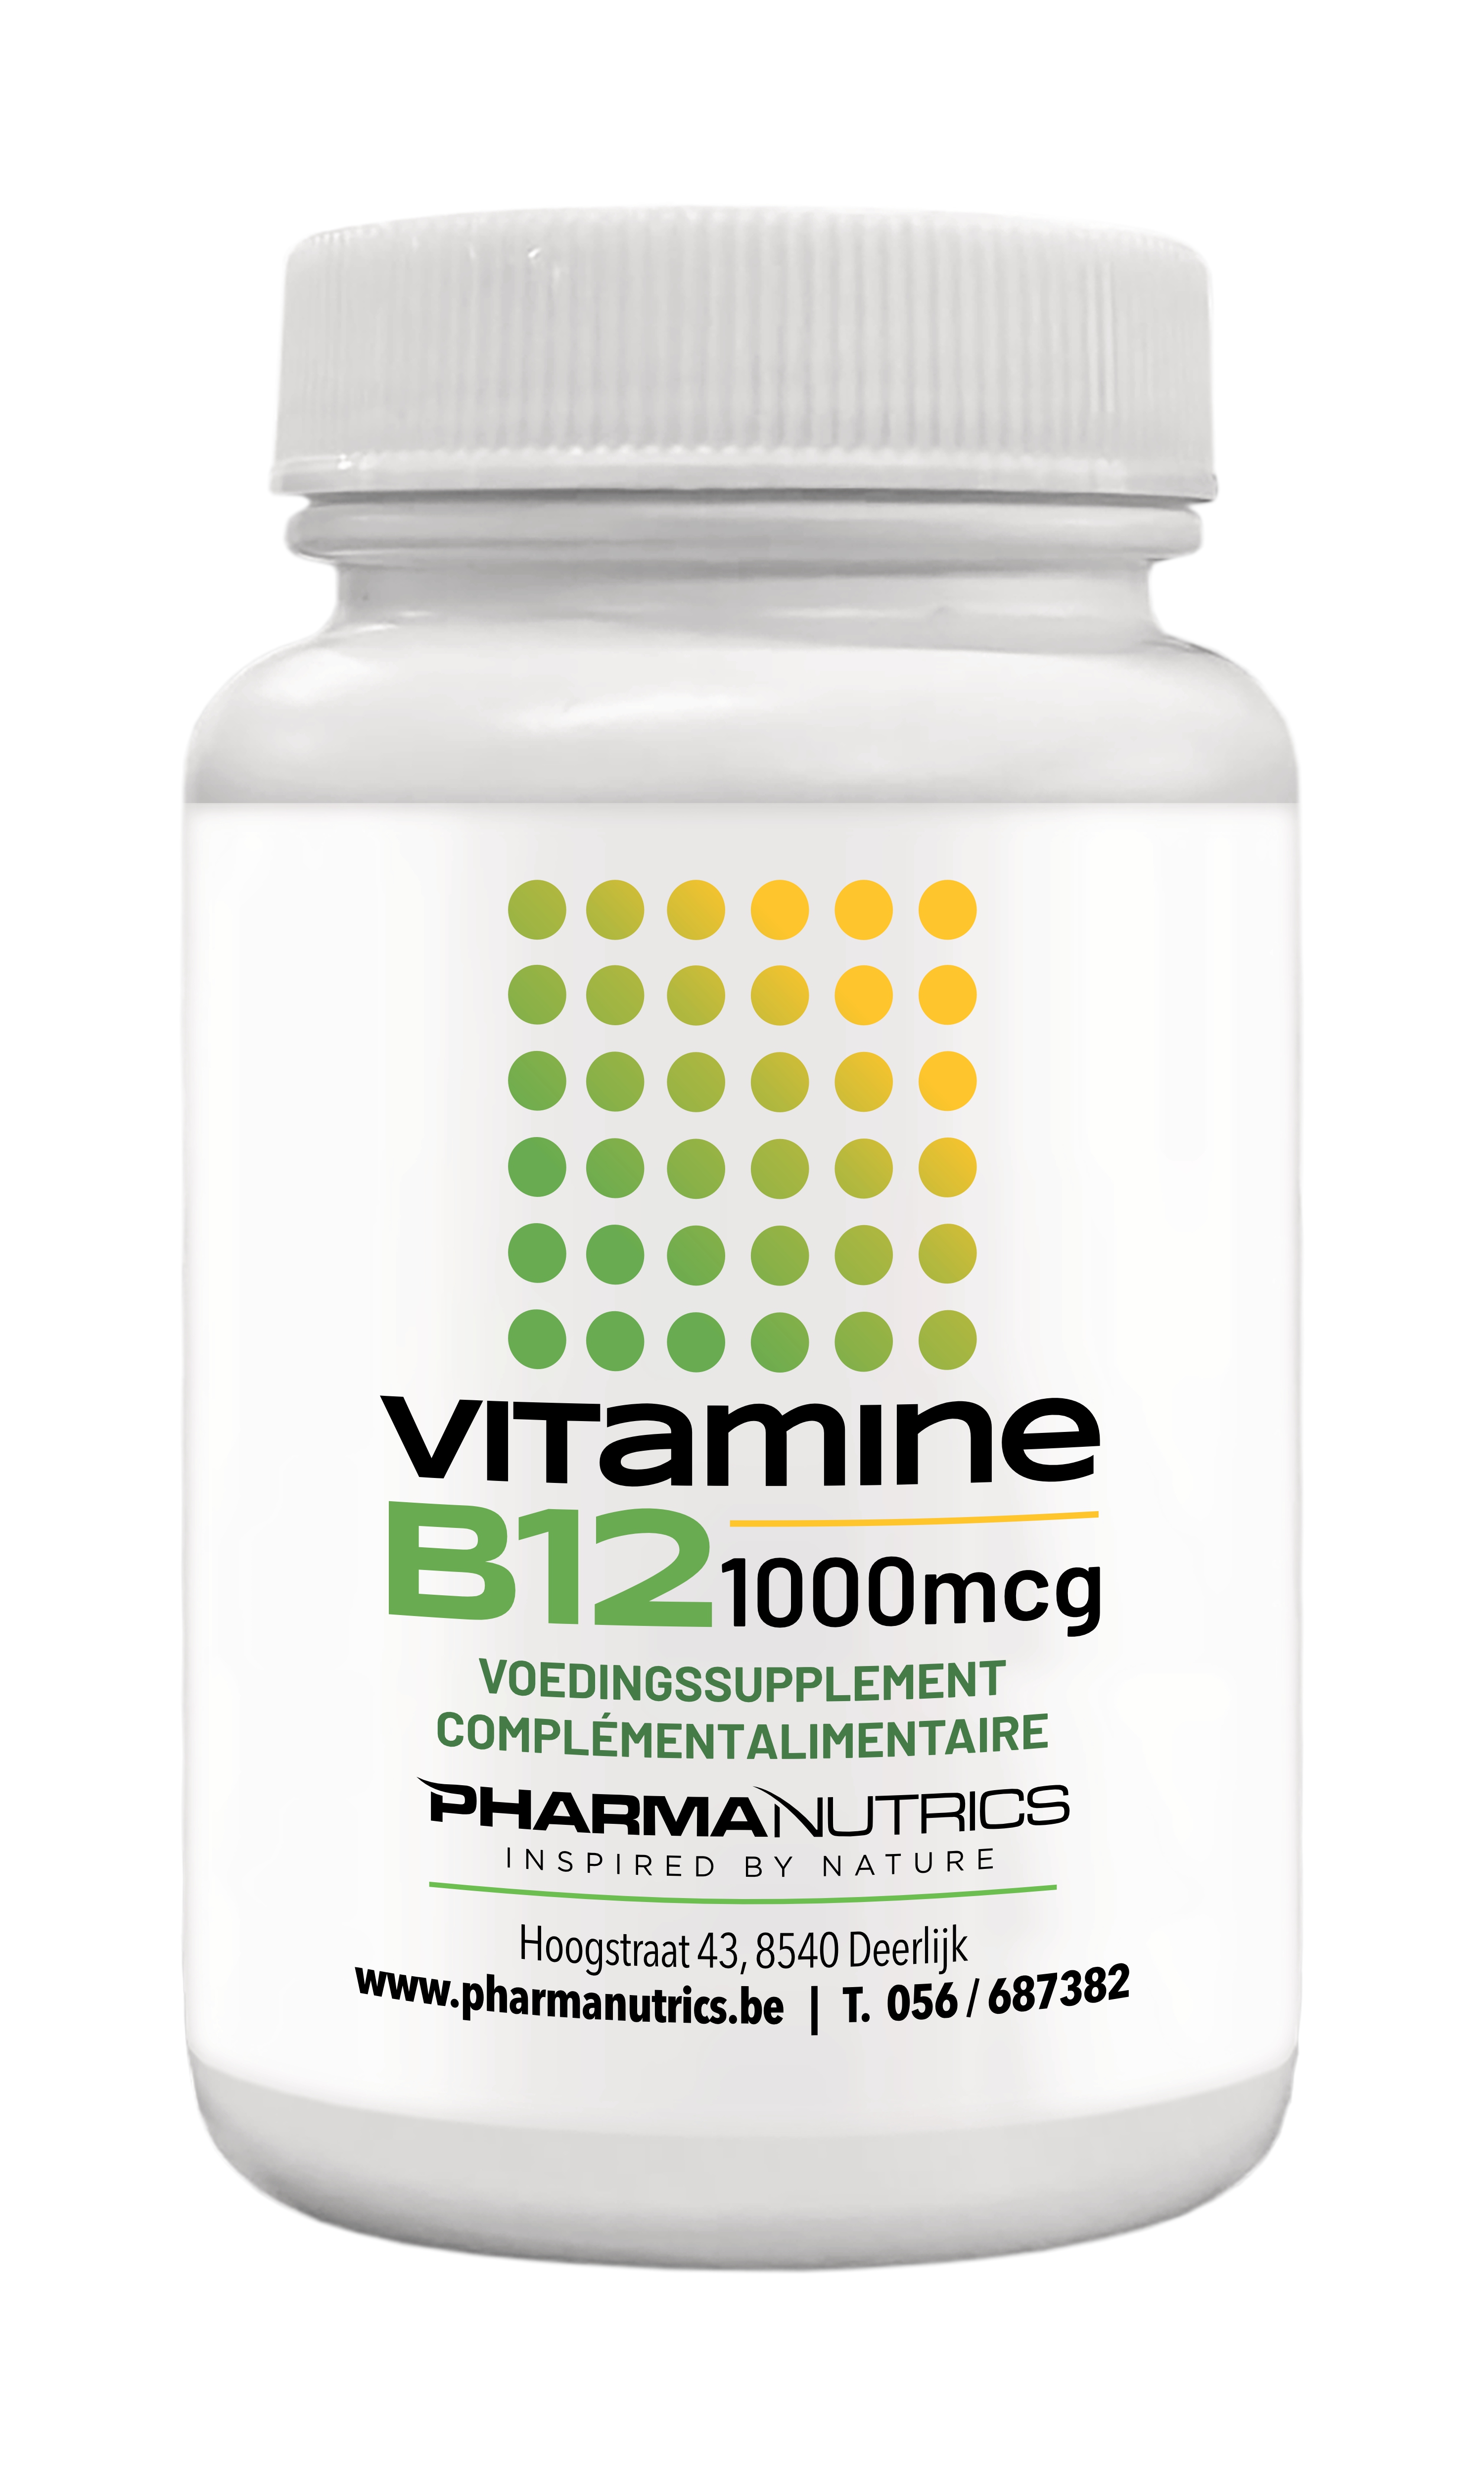 Vitamine B12 (1000 mcg) - 60 kauwtabs